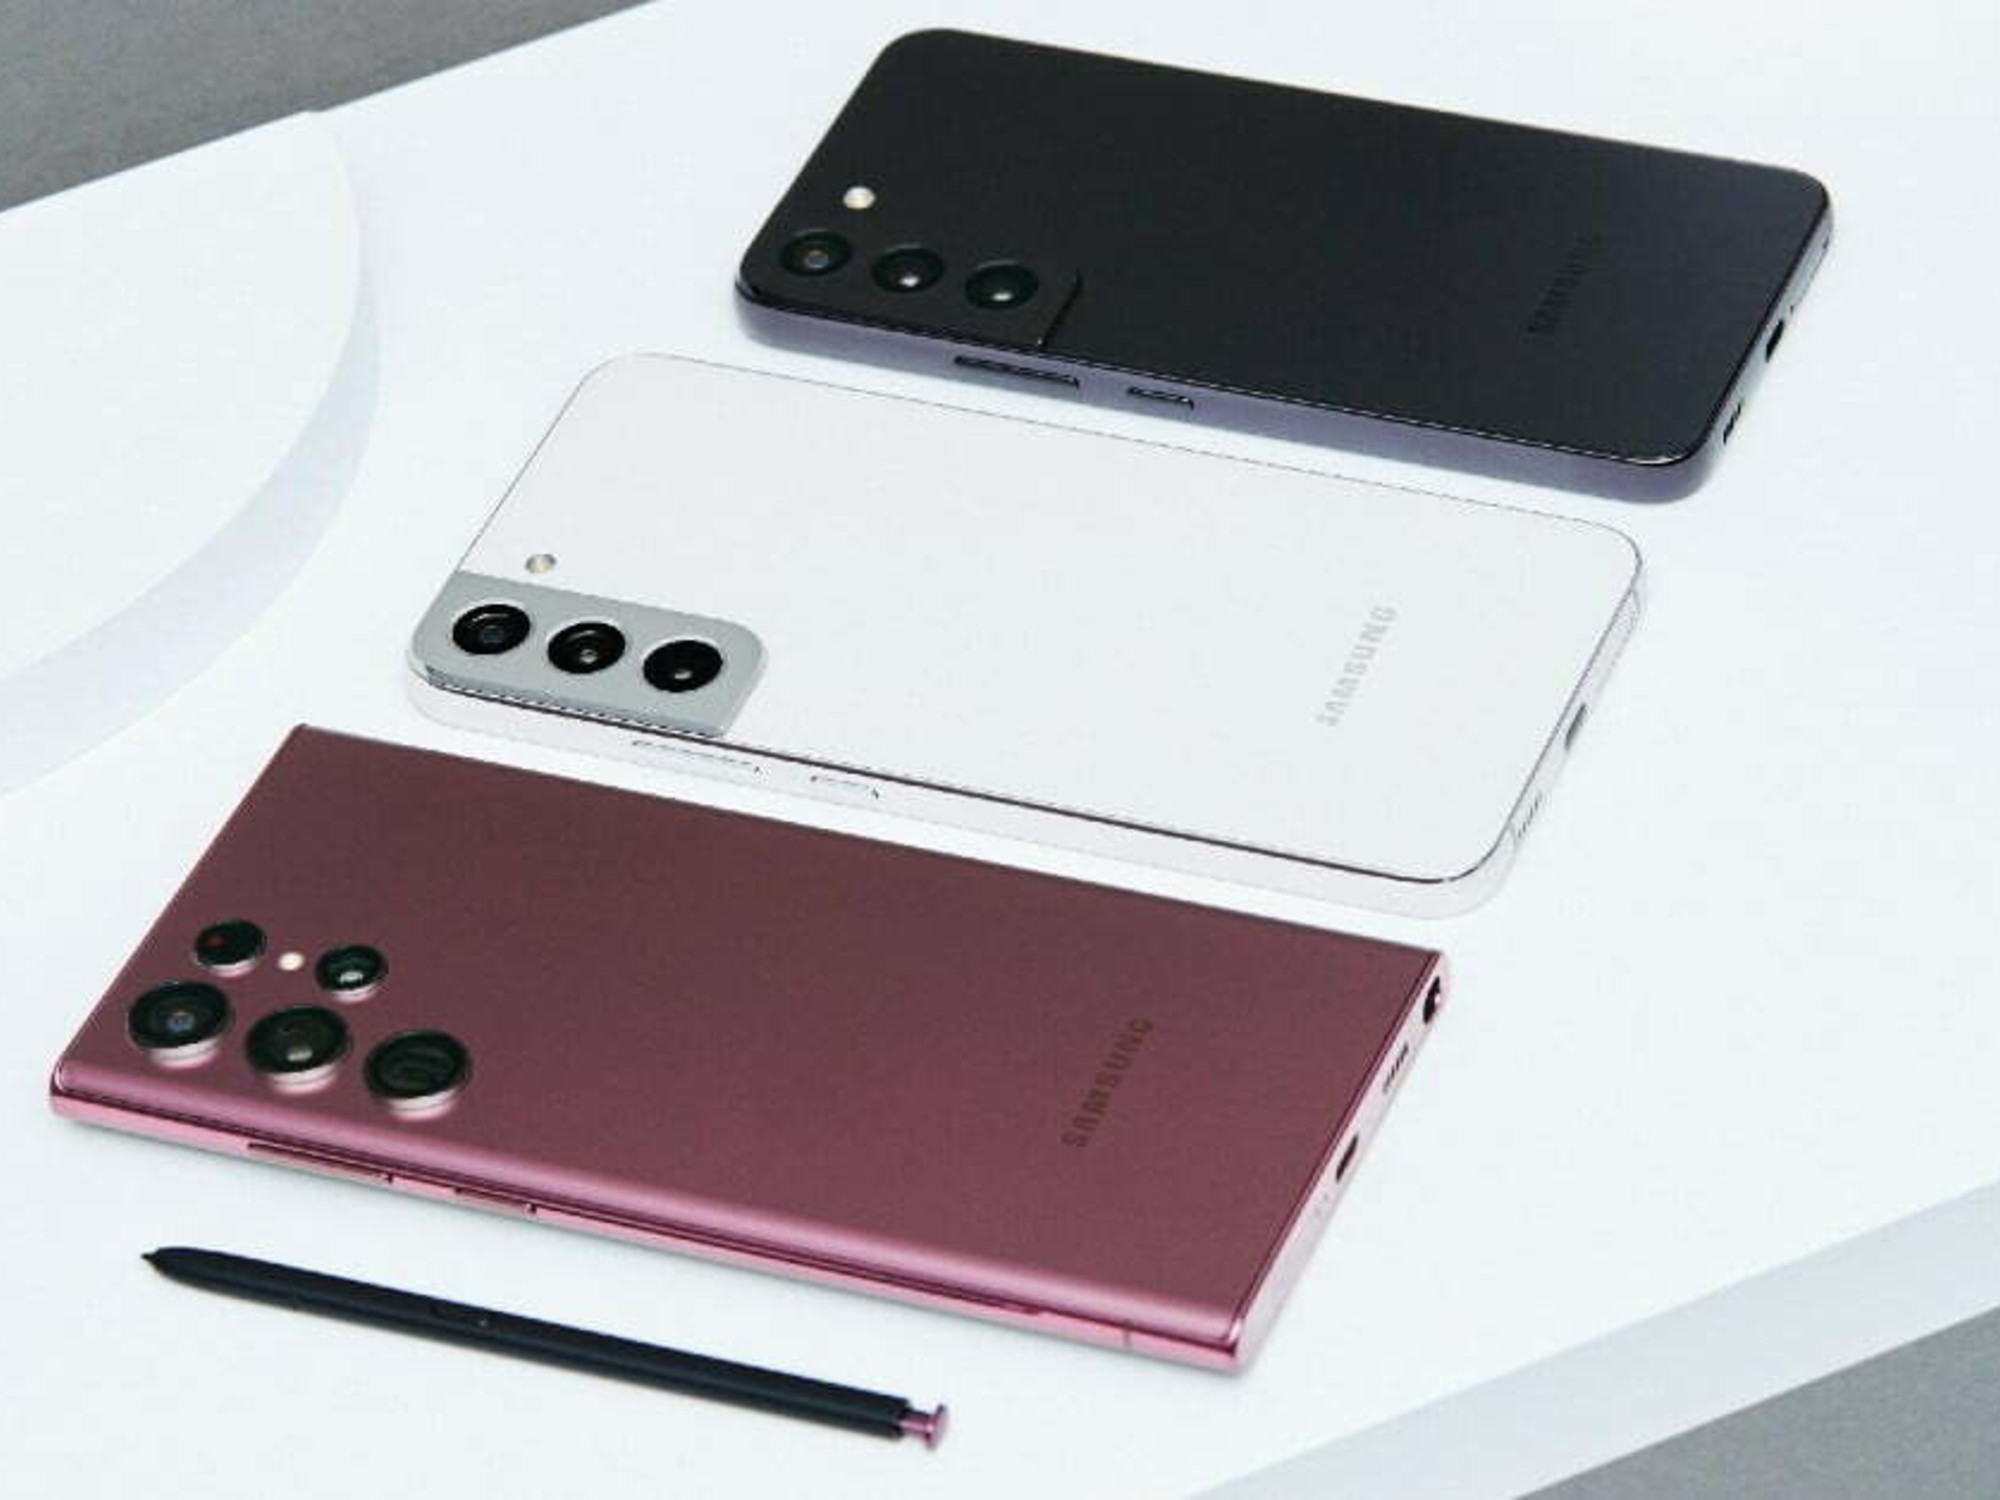 Roux Altijd Tom Audreath Heeft de Samsung Galaxy S22 een SD kaart slot? - Phone-Factory